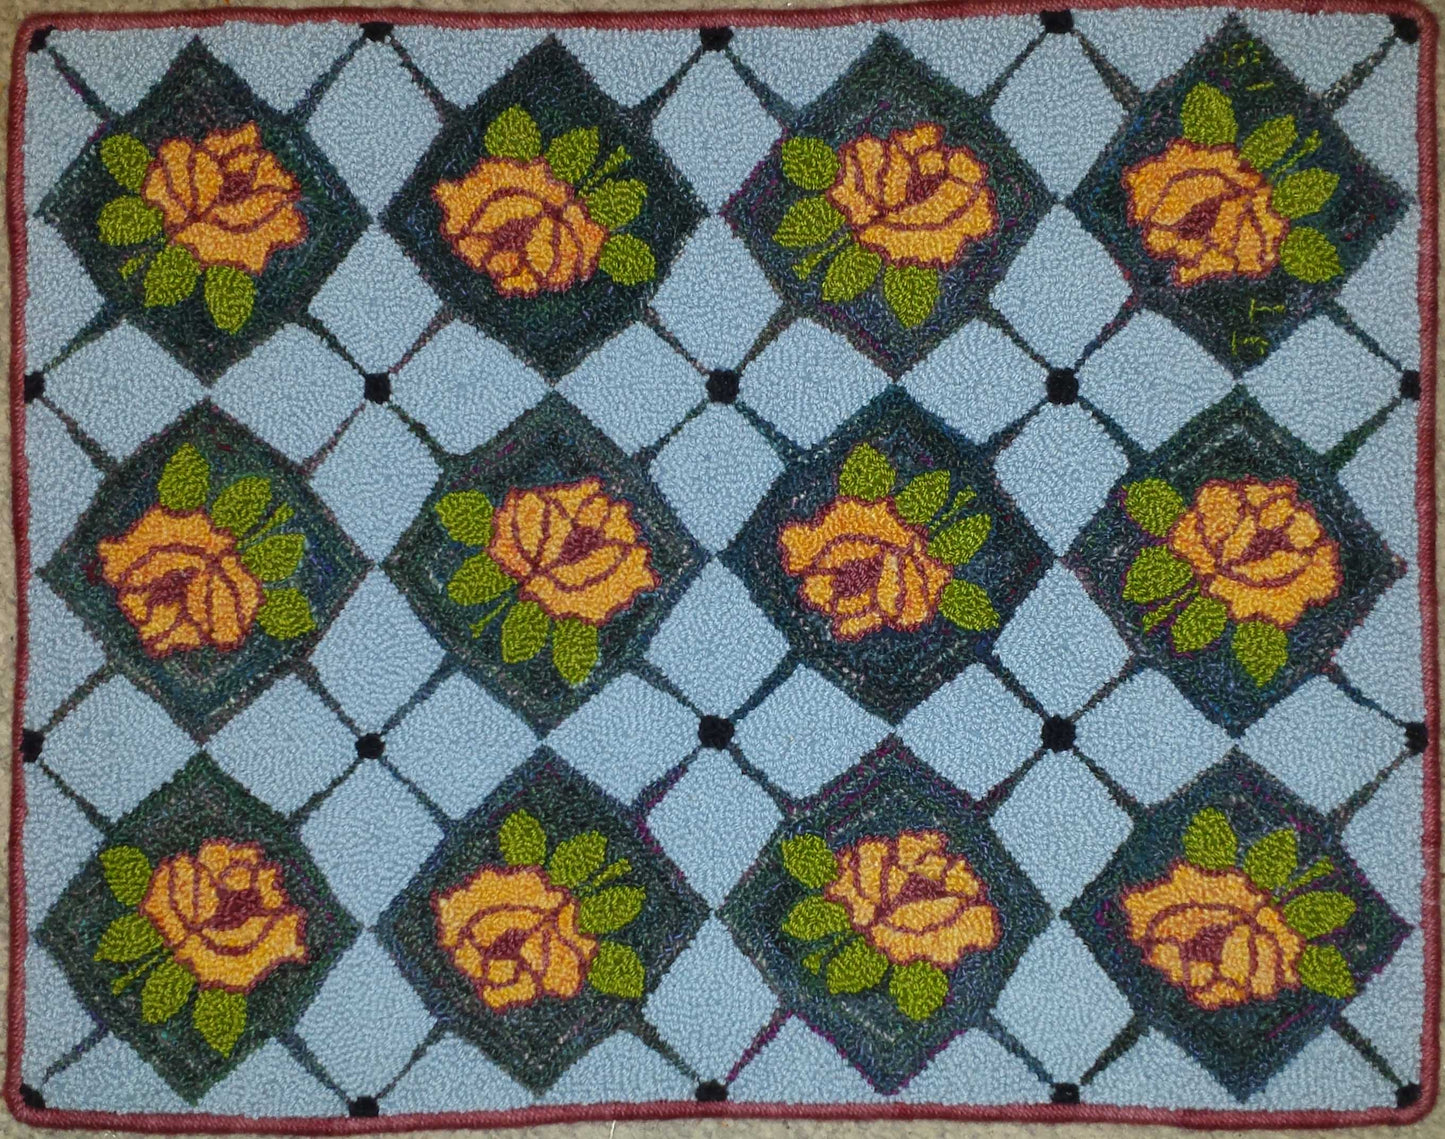 Roses & Diamonds Pattern on linen, 26.5"x21"